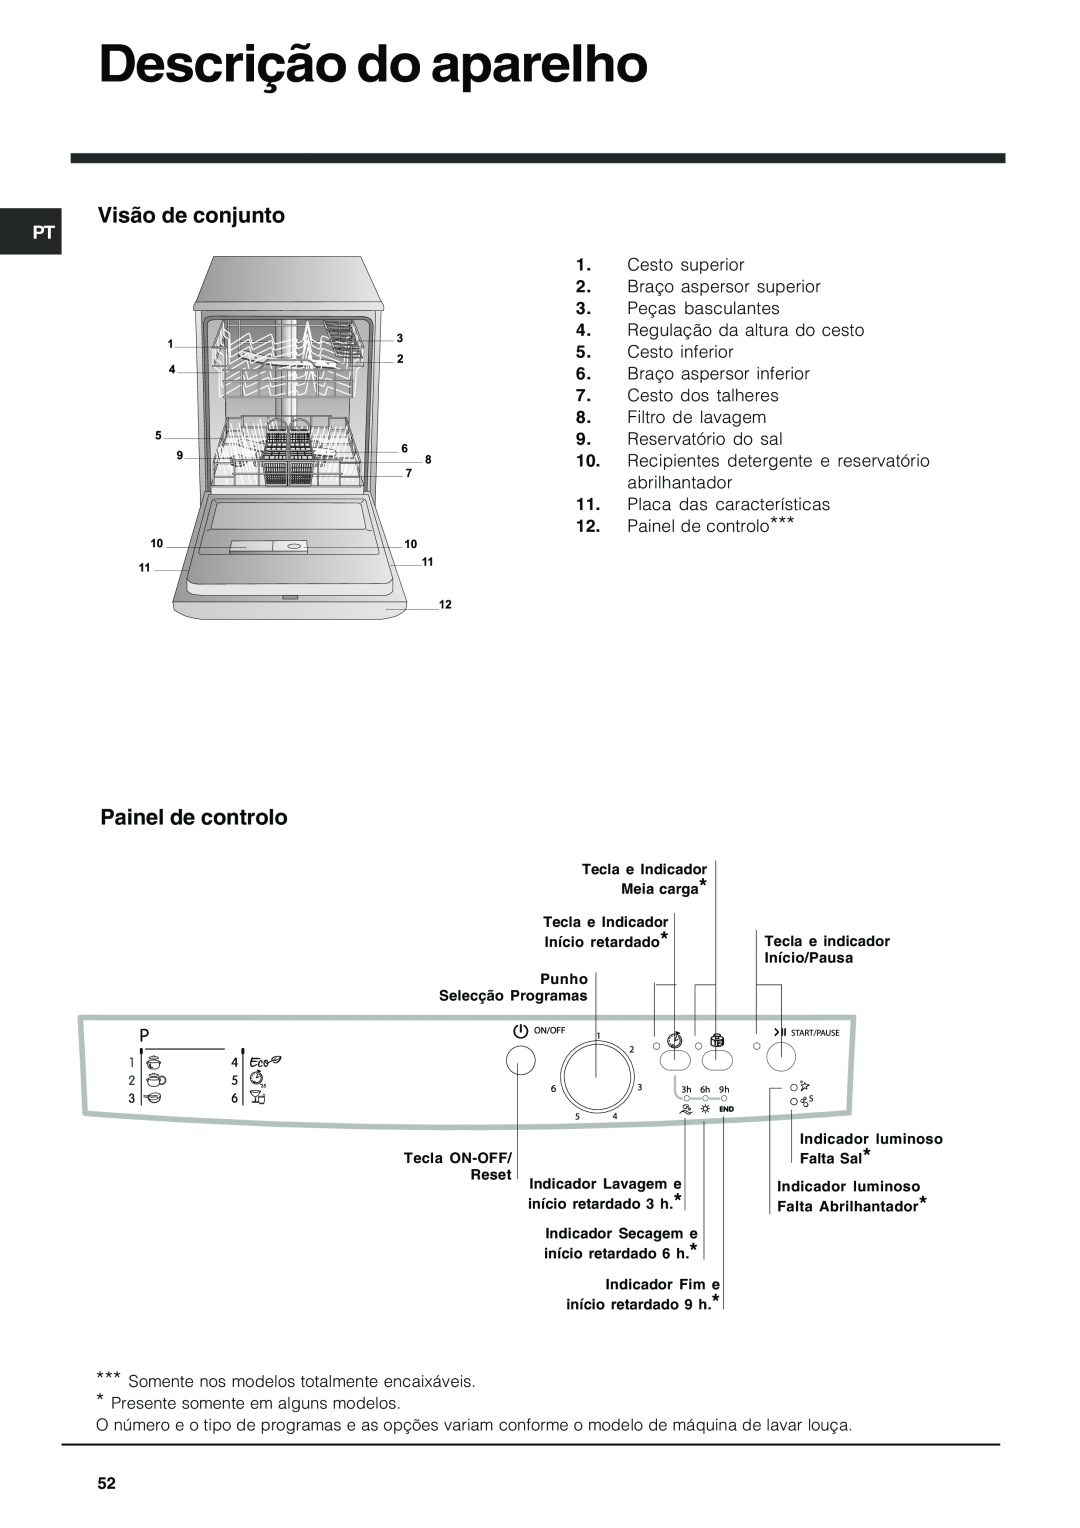 Indesit DFG 262 operating instructions Descrição do aparelho, Visão de conjunto, Painel de controlo 